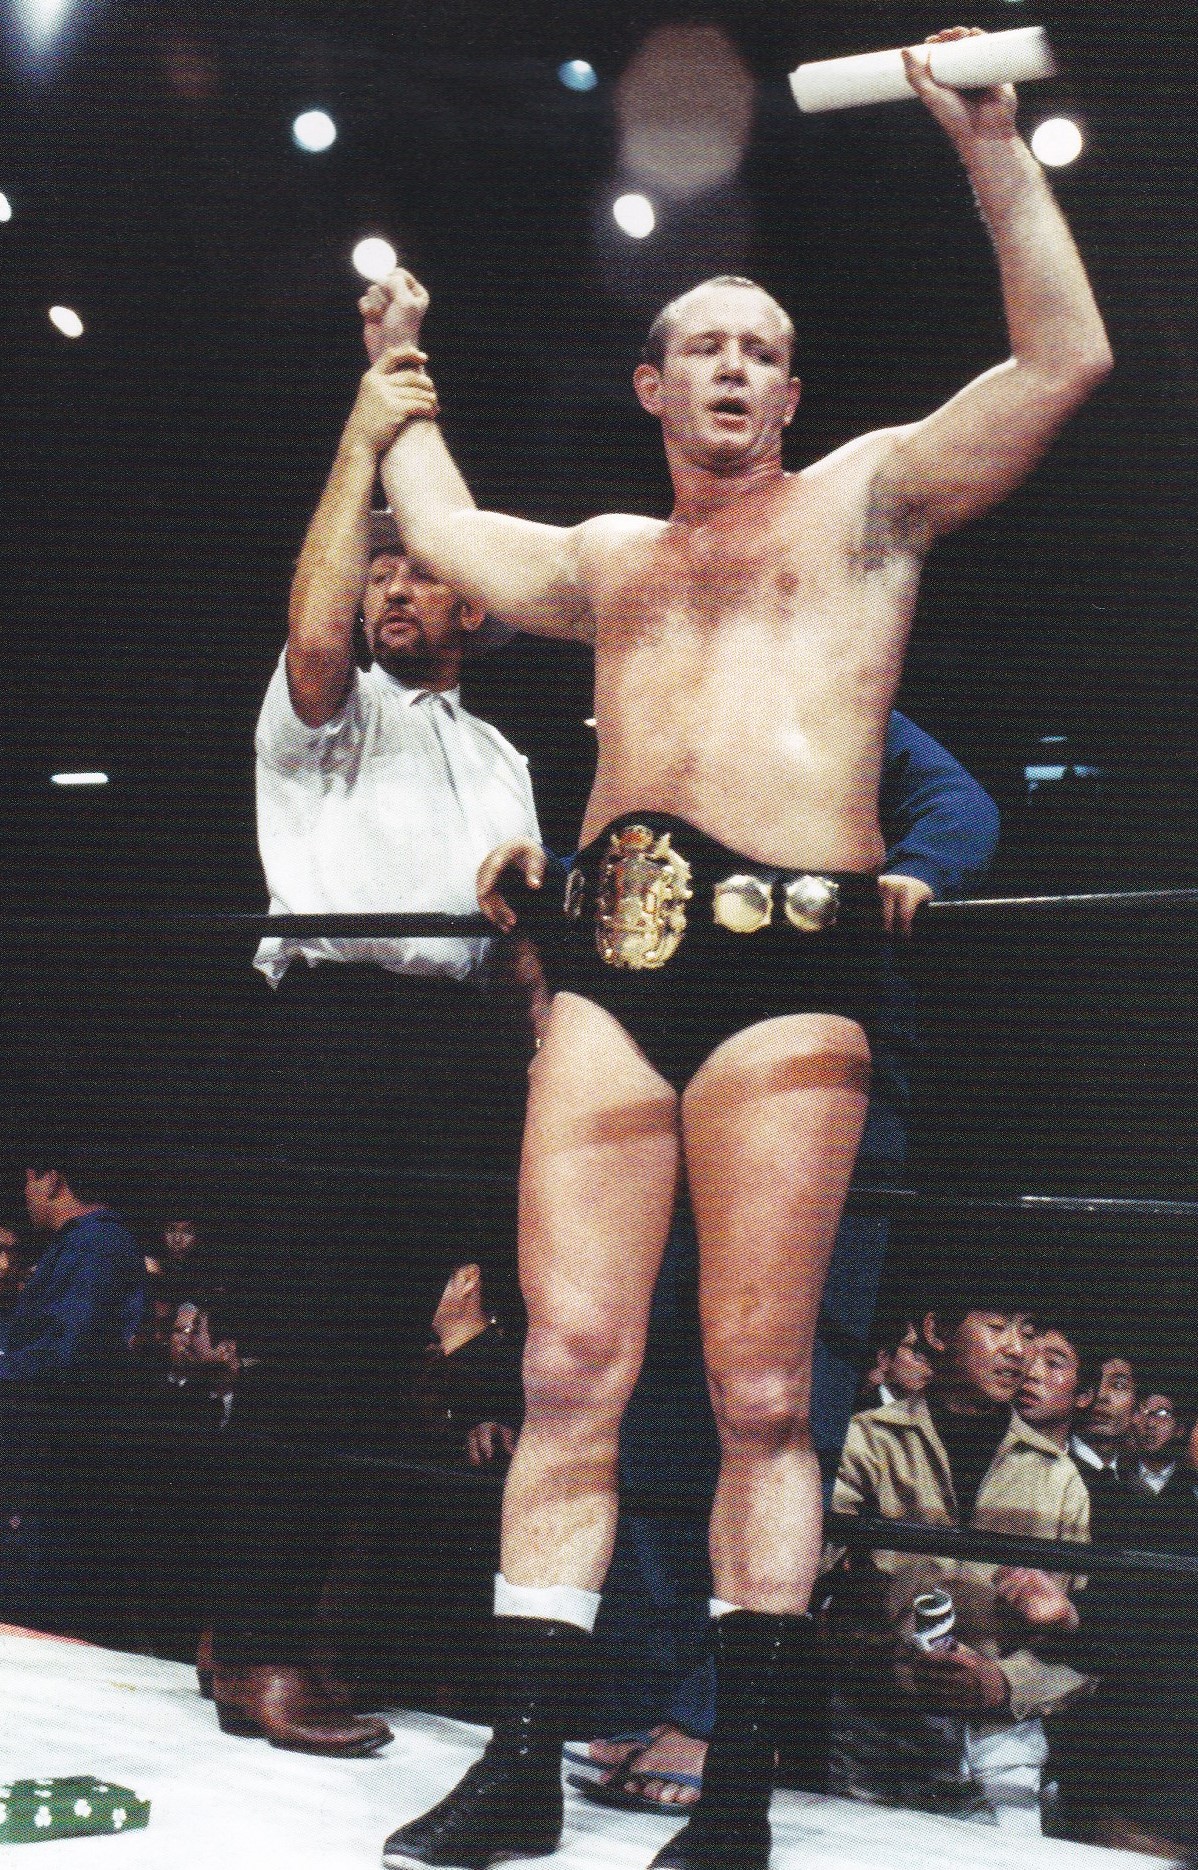 NWA 世界ヘビー級チャンピオンベルトドリーファンクJR,テリーファンク